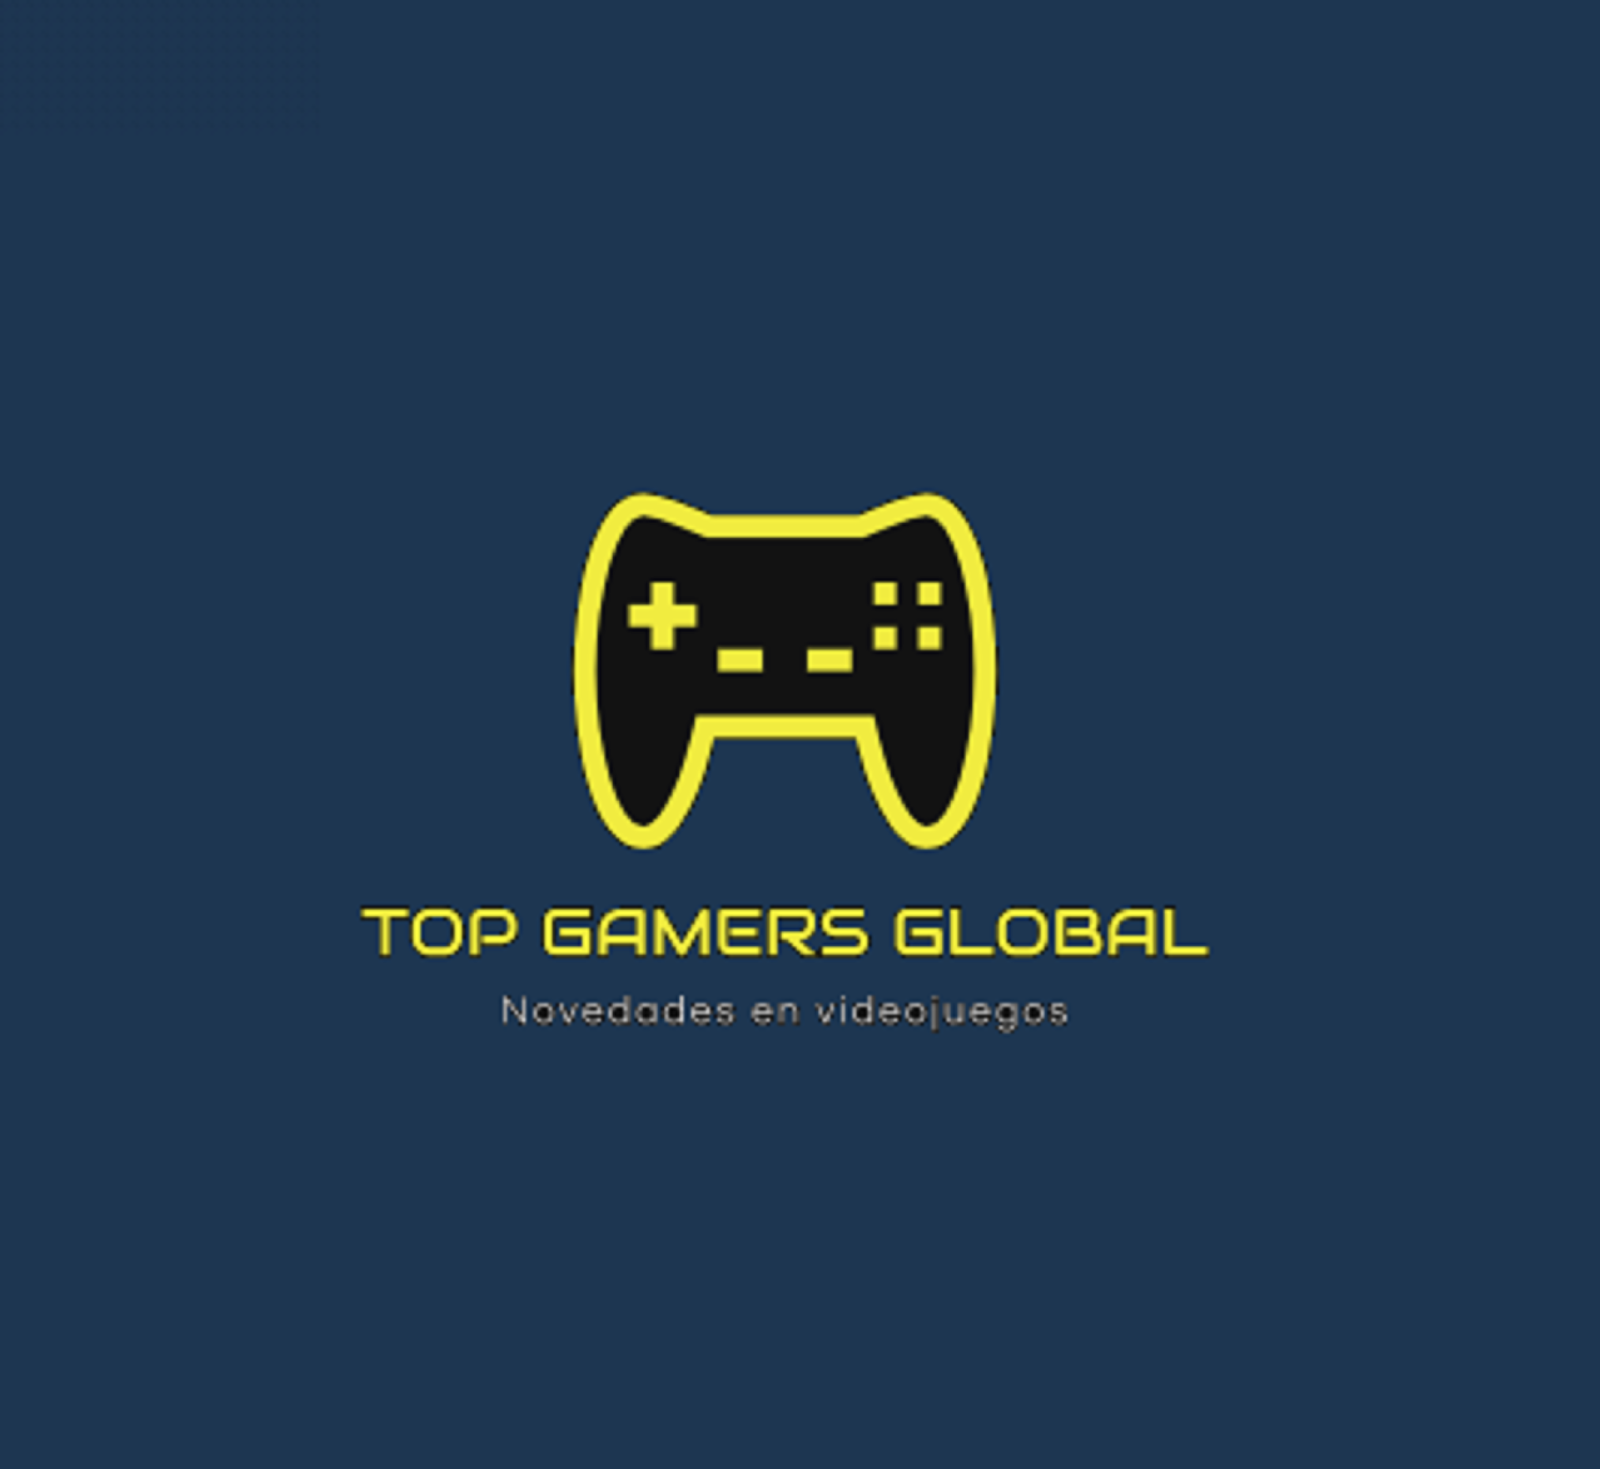 Top Gamers Global